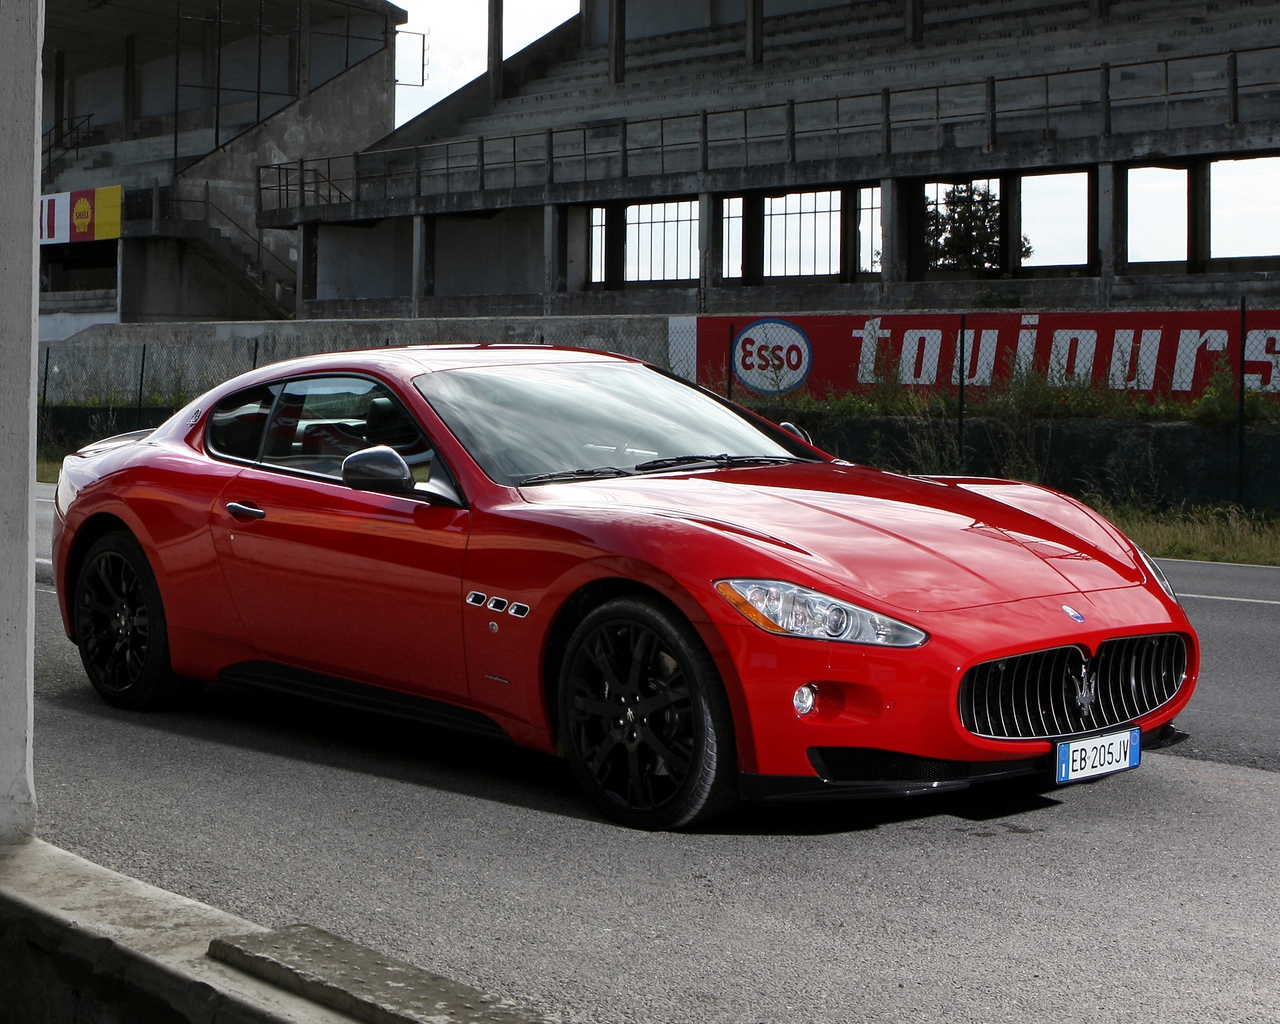 Red Maserati GranTurismo S  for 1280 x 1024 resolution